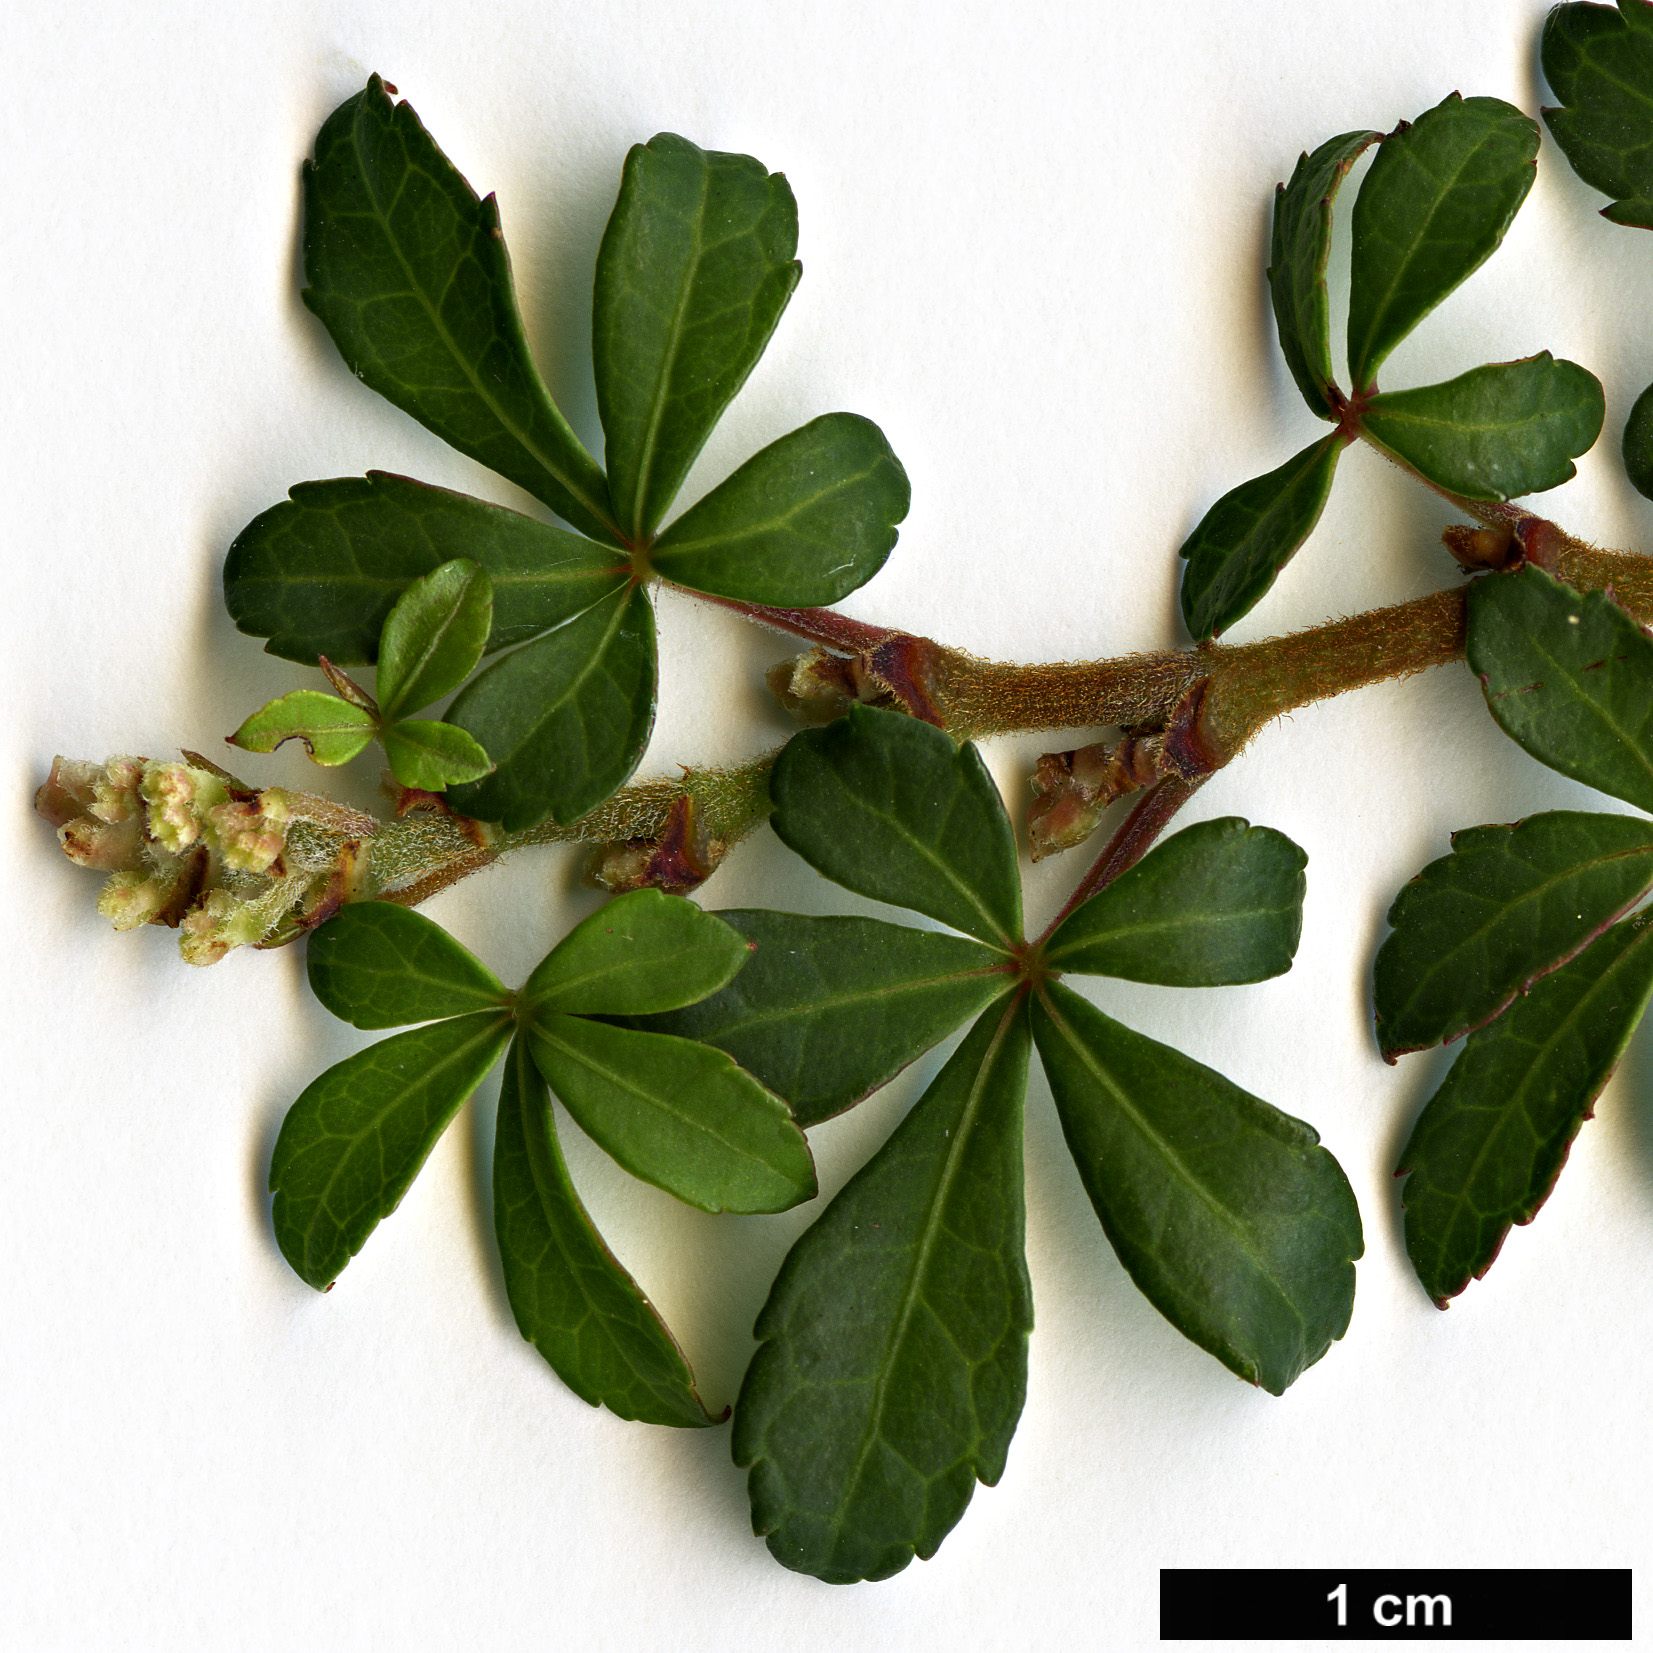 High resolution image: Family: Vitaceae - Genus: Cissus - Taxon: striatus